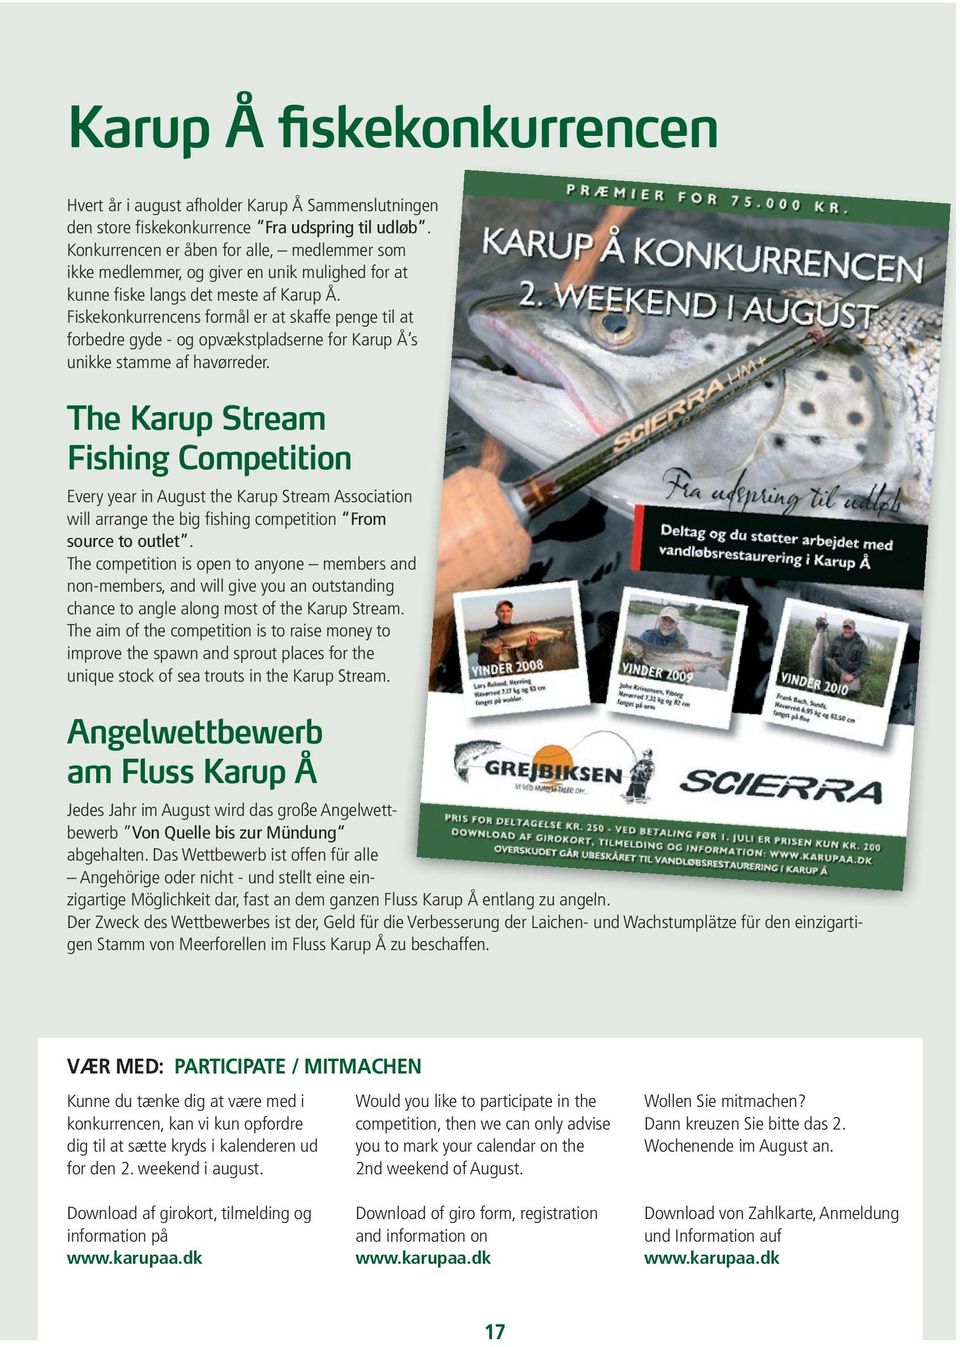 Fiskekonkurrencens formål er at skaffe penge til at forbedre gyde - og opvækstpladserne for Karup Å s unikke stamme af havørreder.